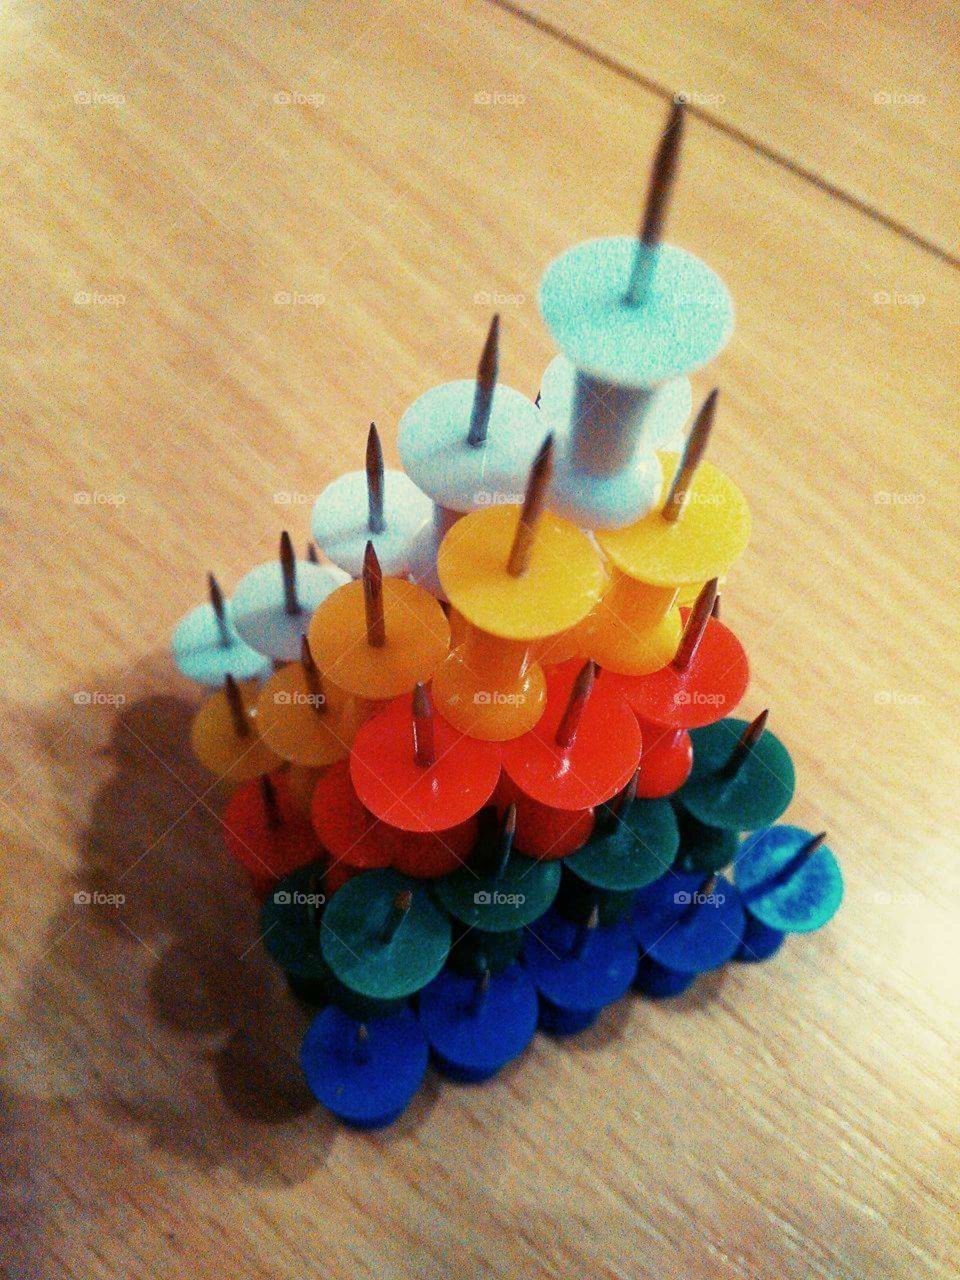 Rainbow pyramid